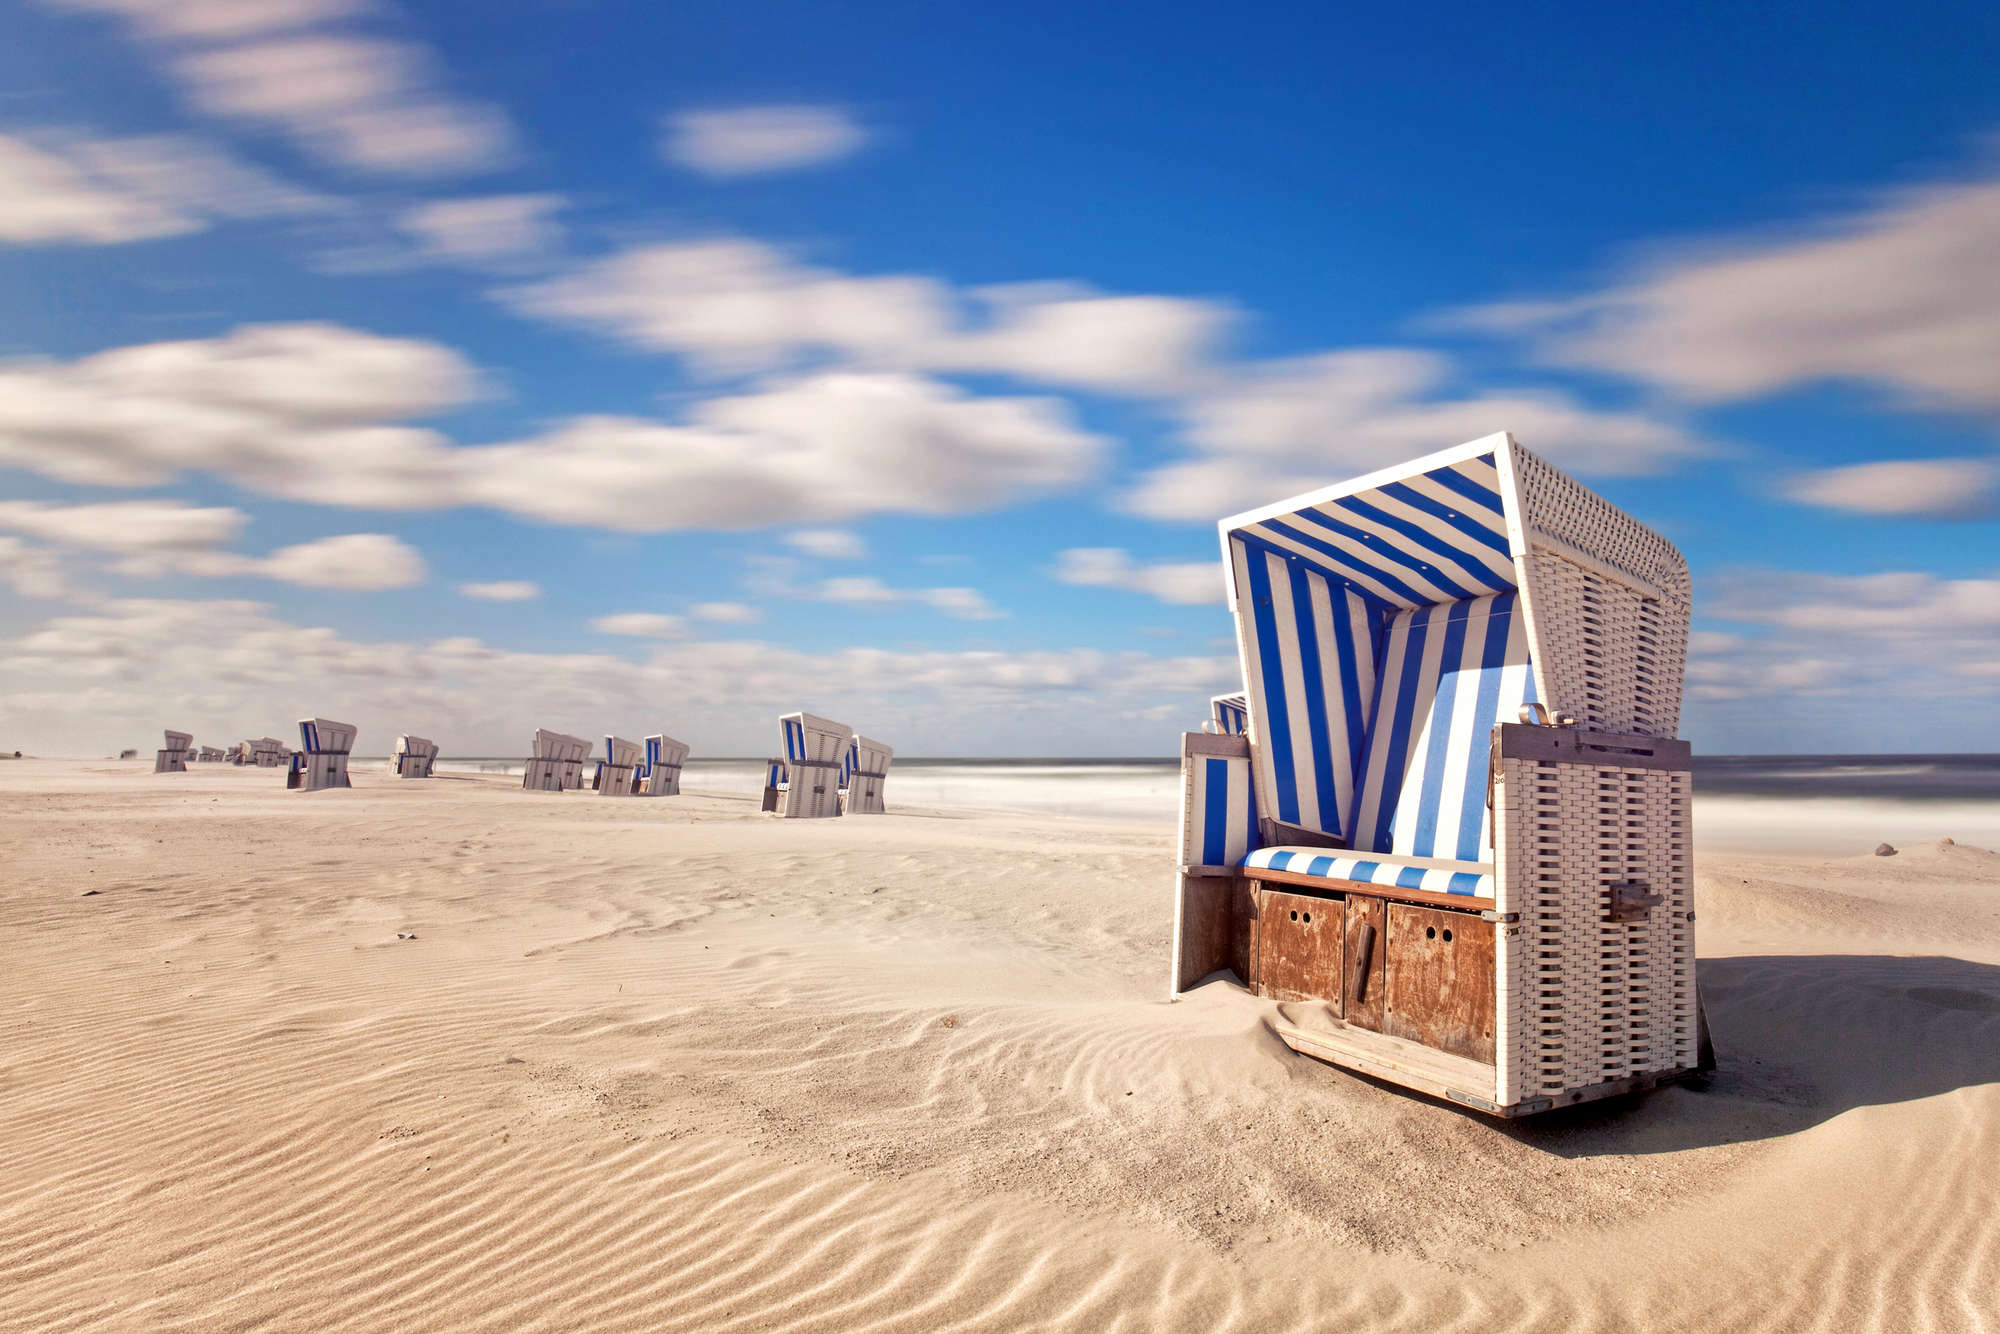             Mural de la playa sillas de playa en la arena sobre vellón liso nacarado
        